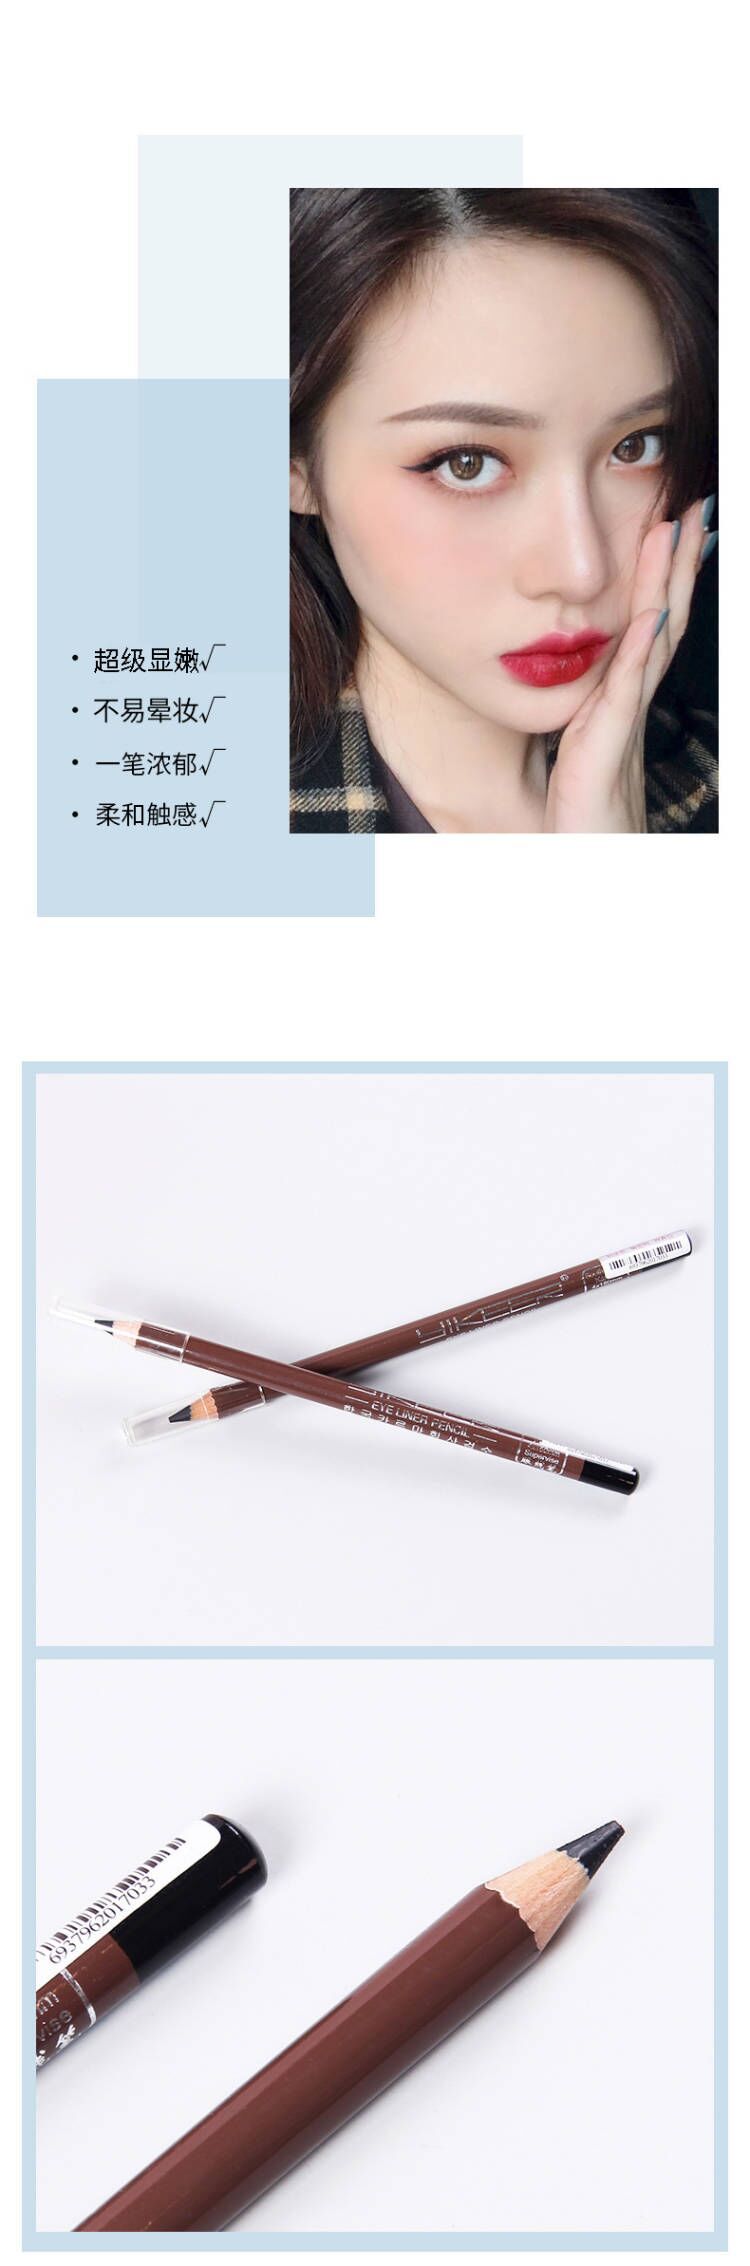 伊可儿 国货彩妆木杆3D立体眼线笔 可削铅笔式眼线笔可印LOGO详情6